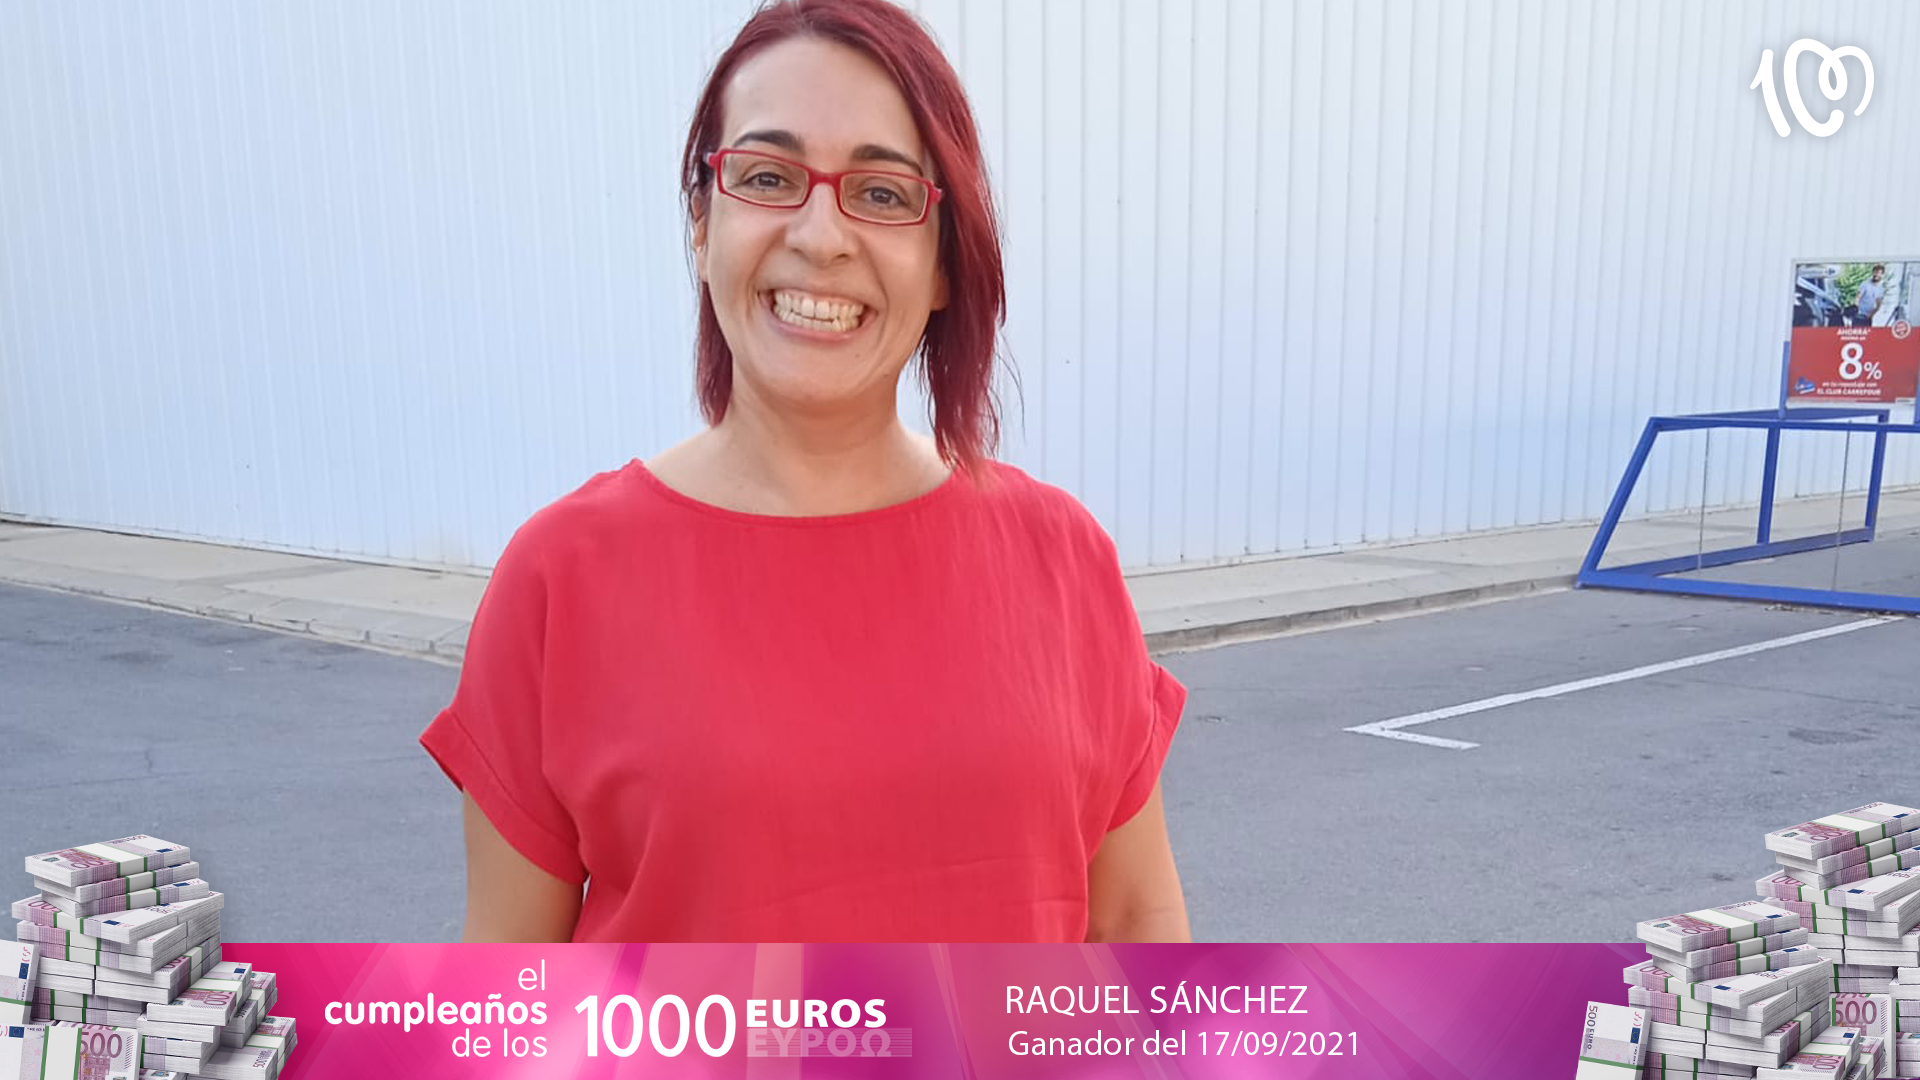 Raquel Sánchez ha ganado 1.000 euros: "Una alegría inmensa"